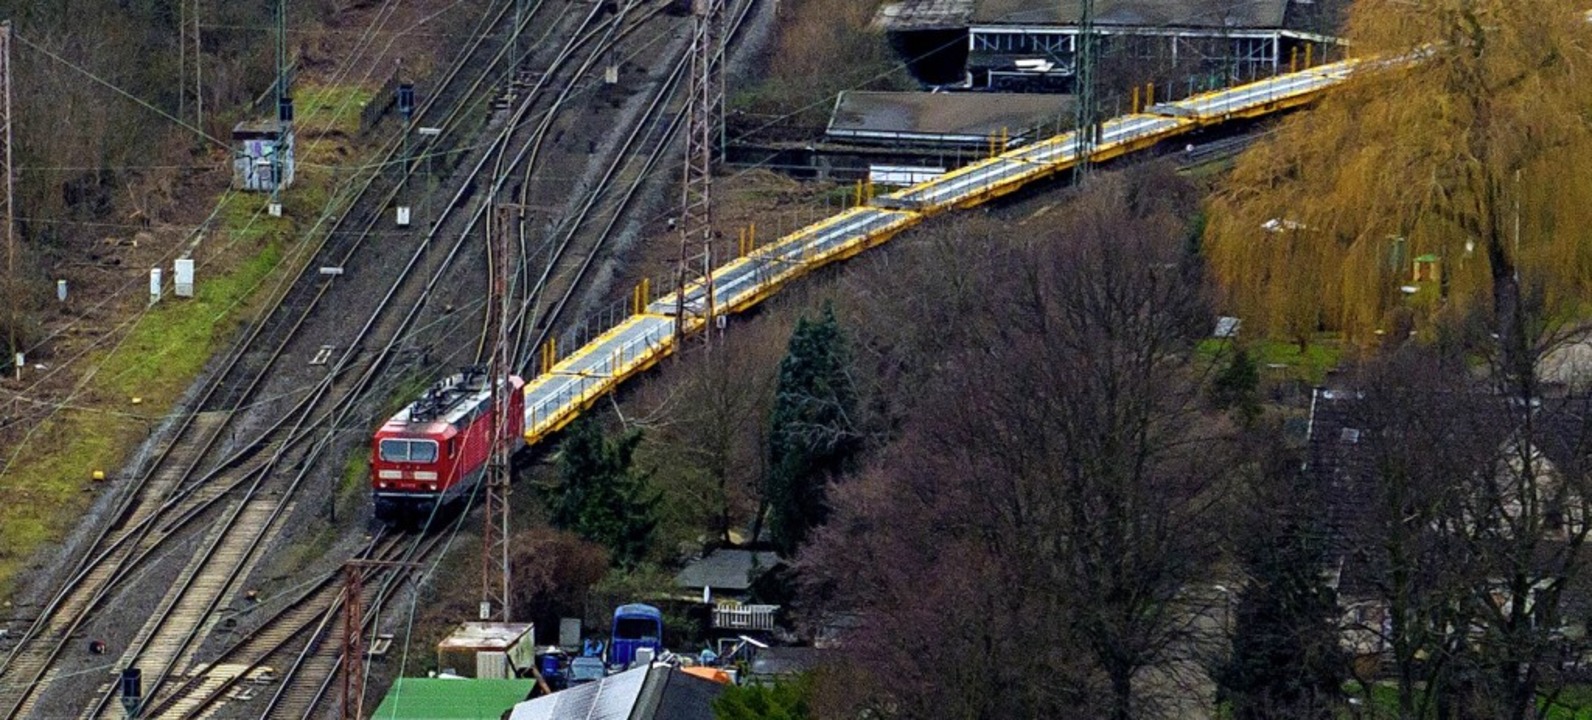 Der Güterzug steht auch am Morgen nach dem Unfall auf den Gleisen.  | Foto: Christoph Reichwein (dpa)